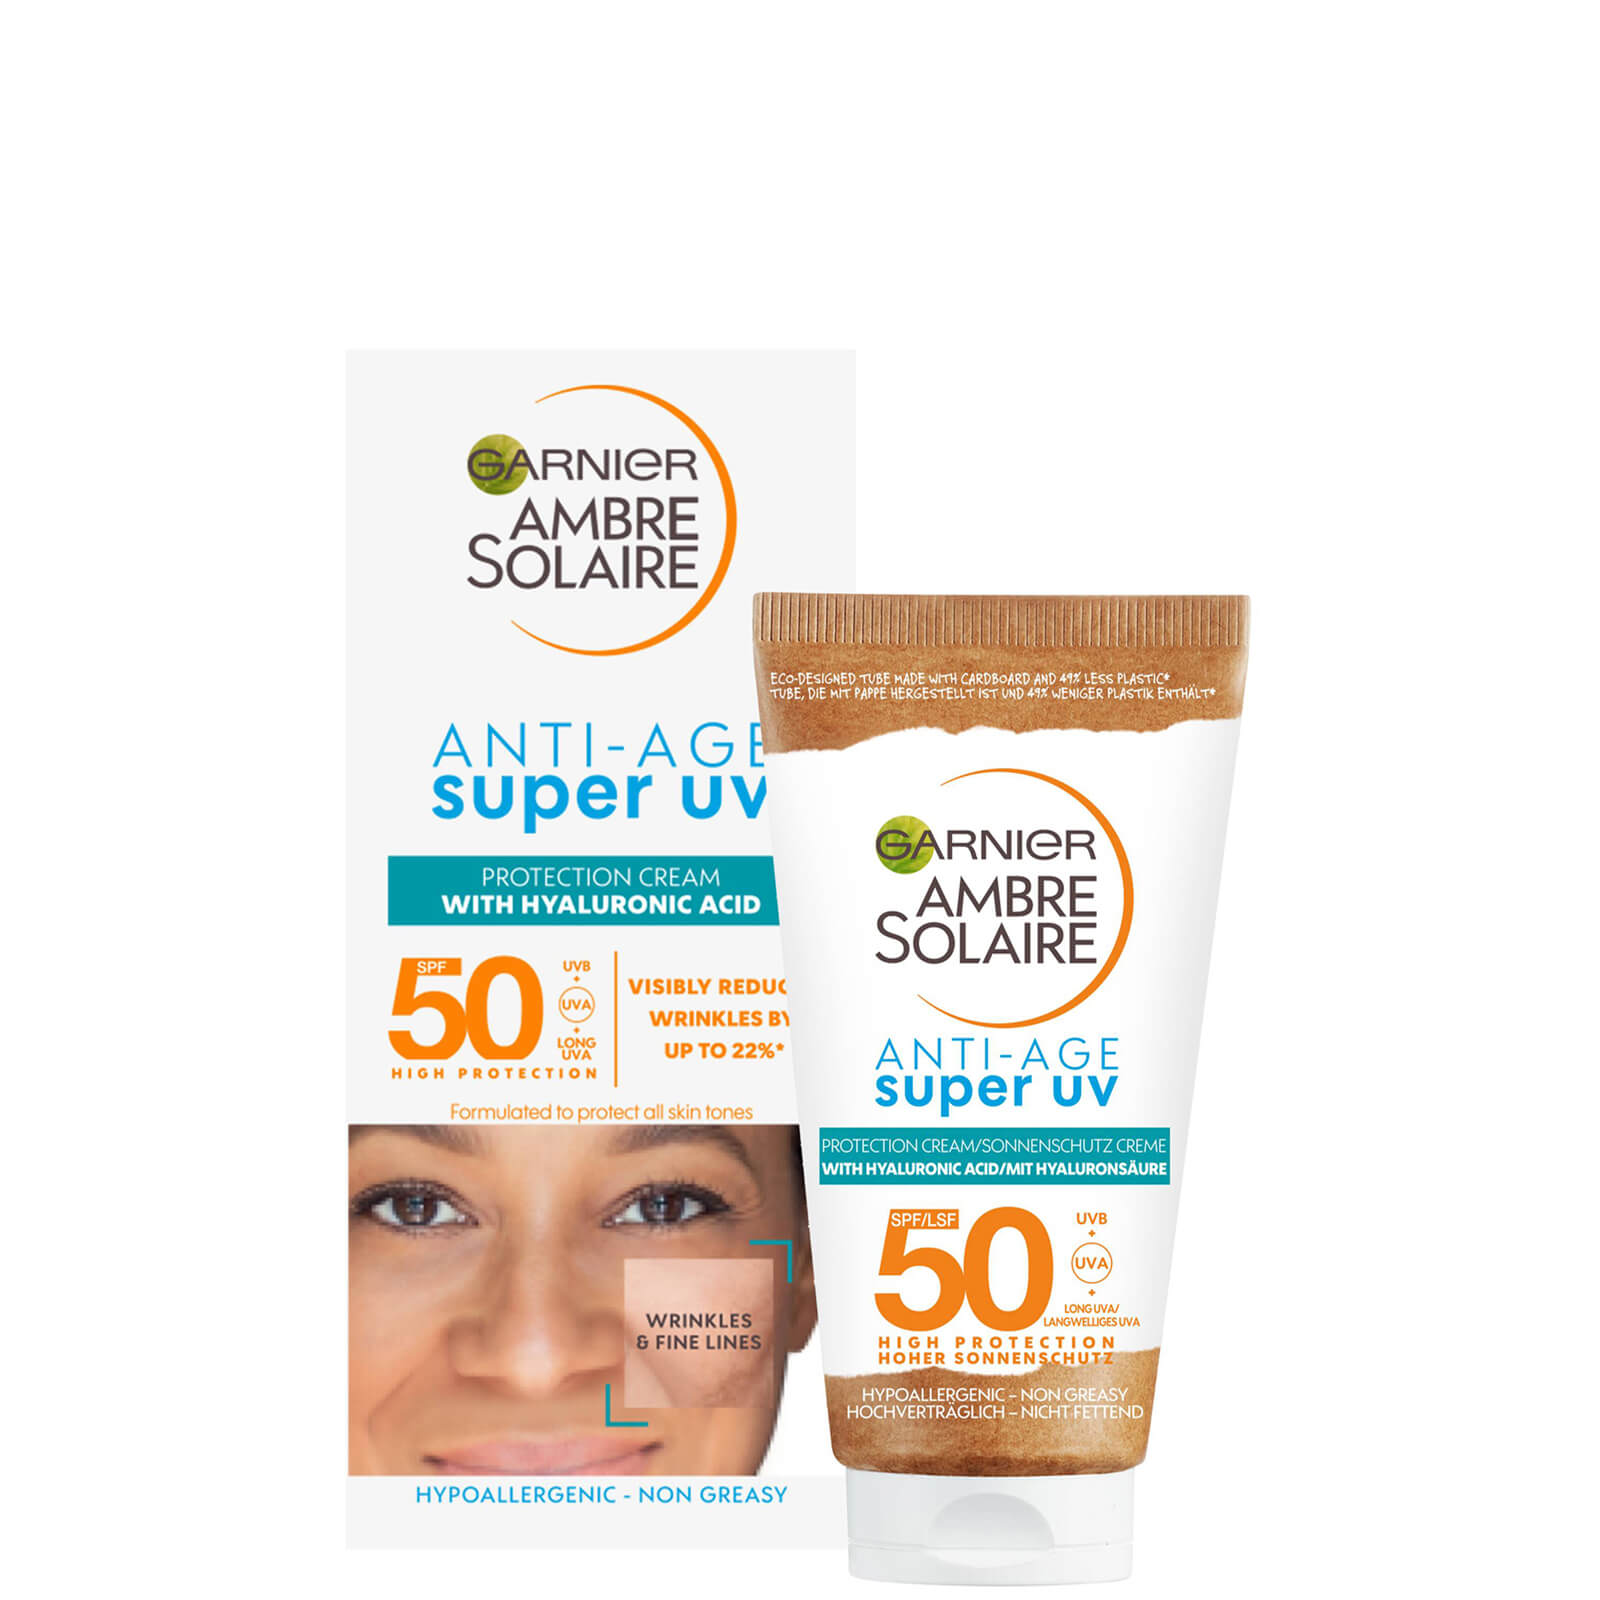 Photos - Sun Skin Care Garnier Ambre Solaire Anti-Age Super UV Face Protection SPF50 Cream 50ml C 